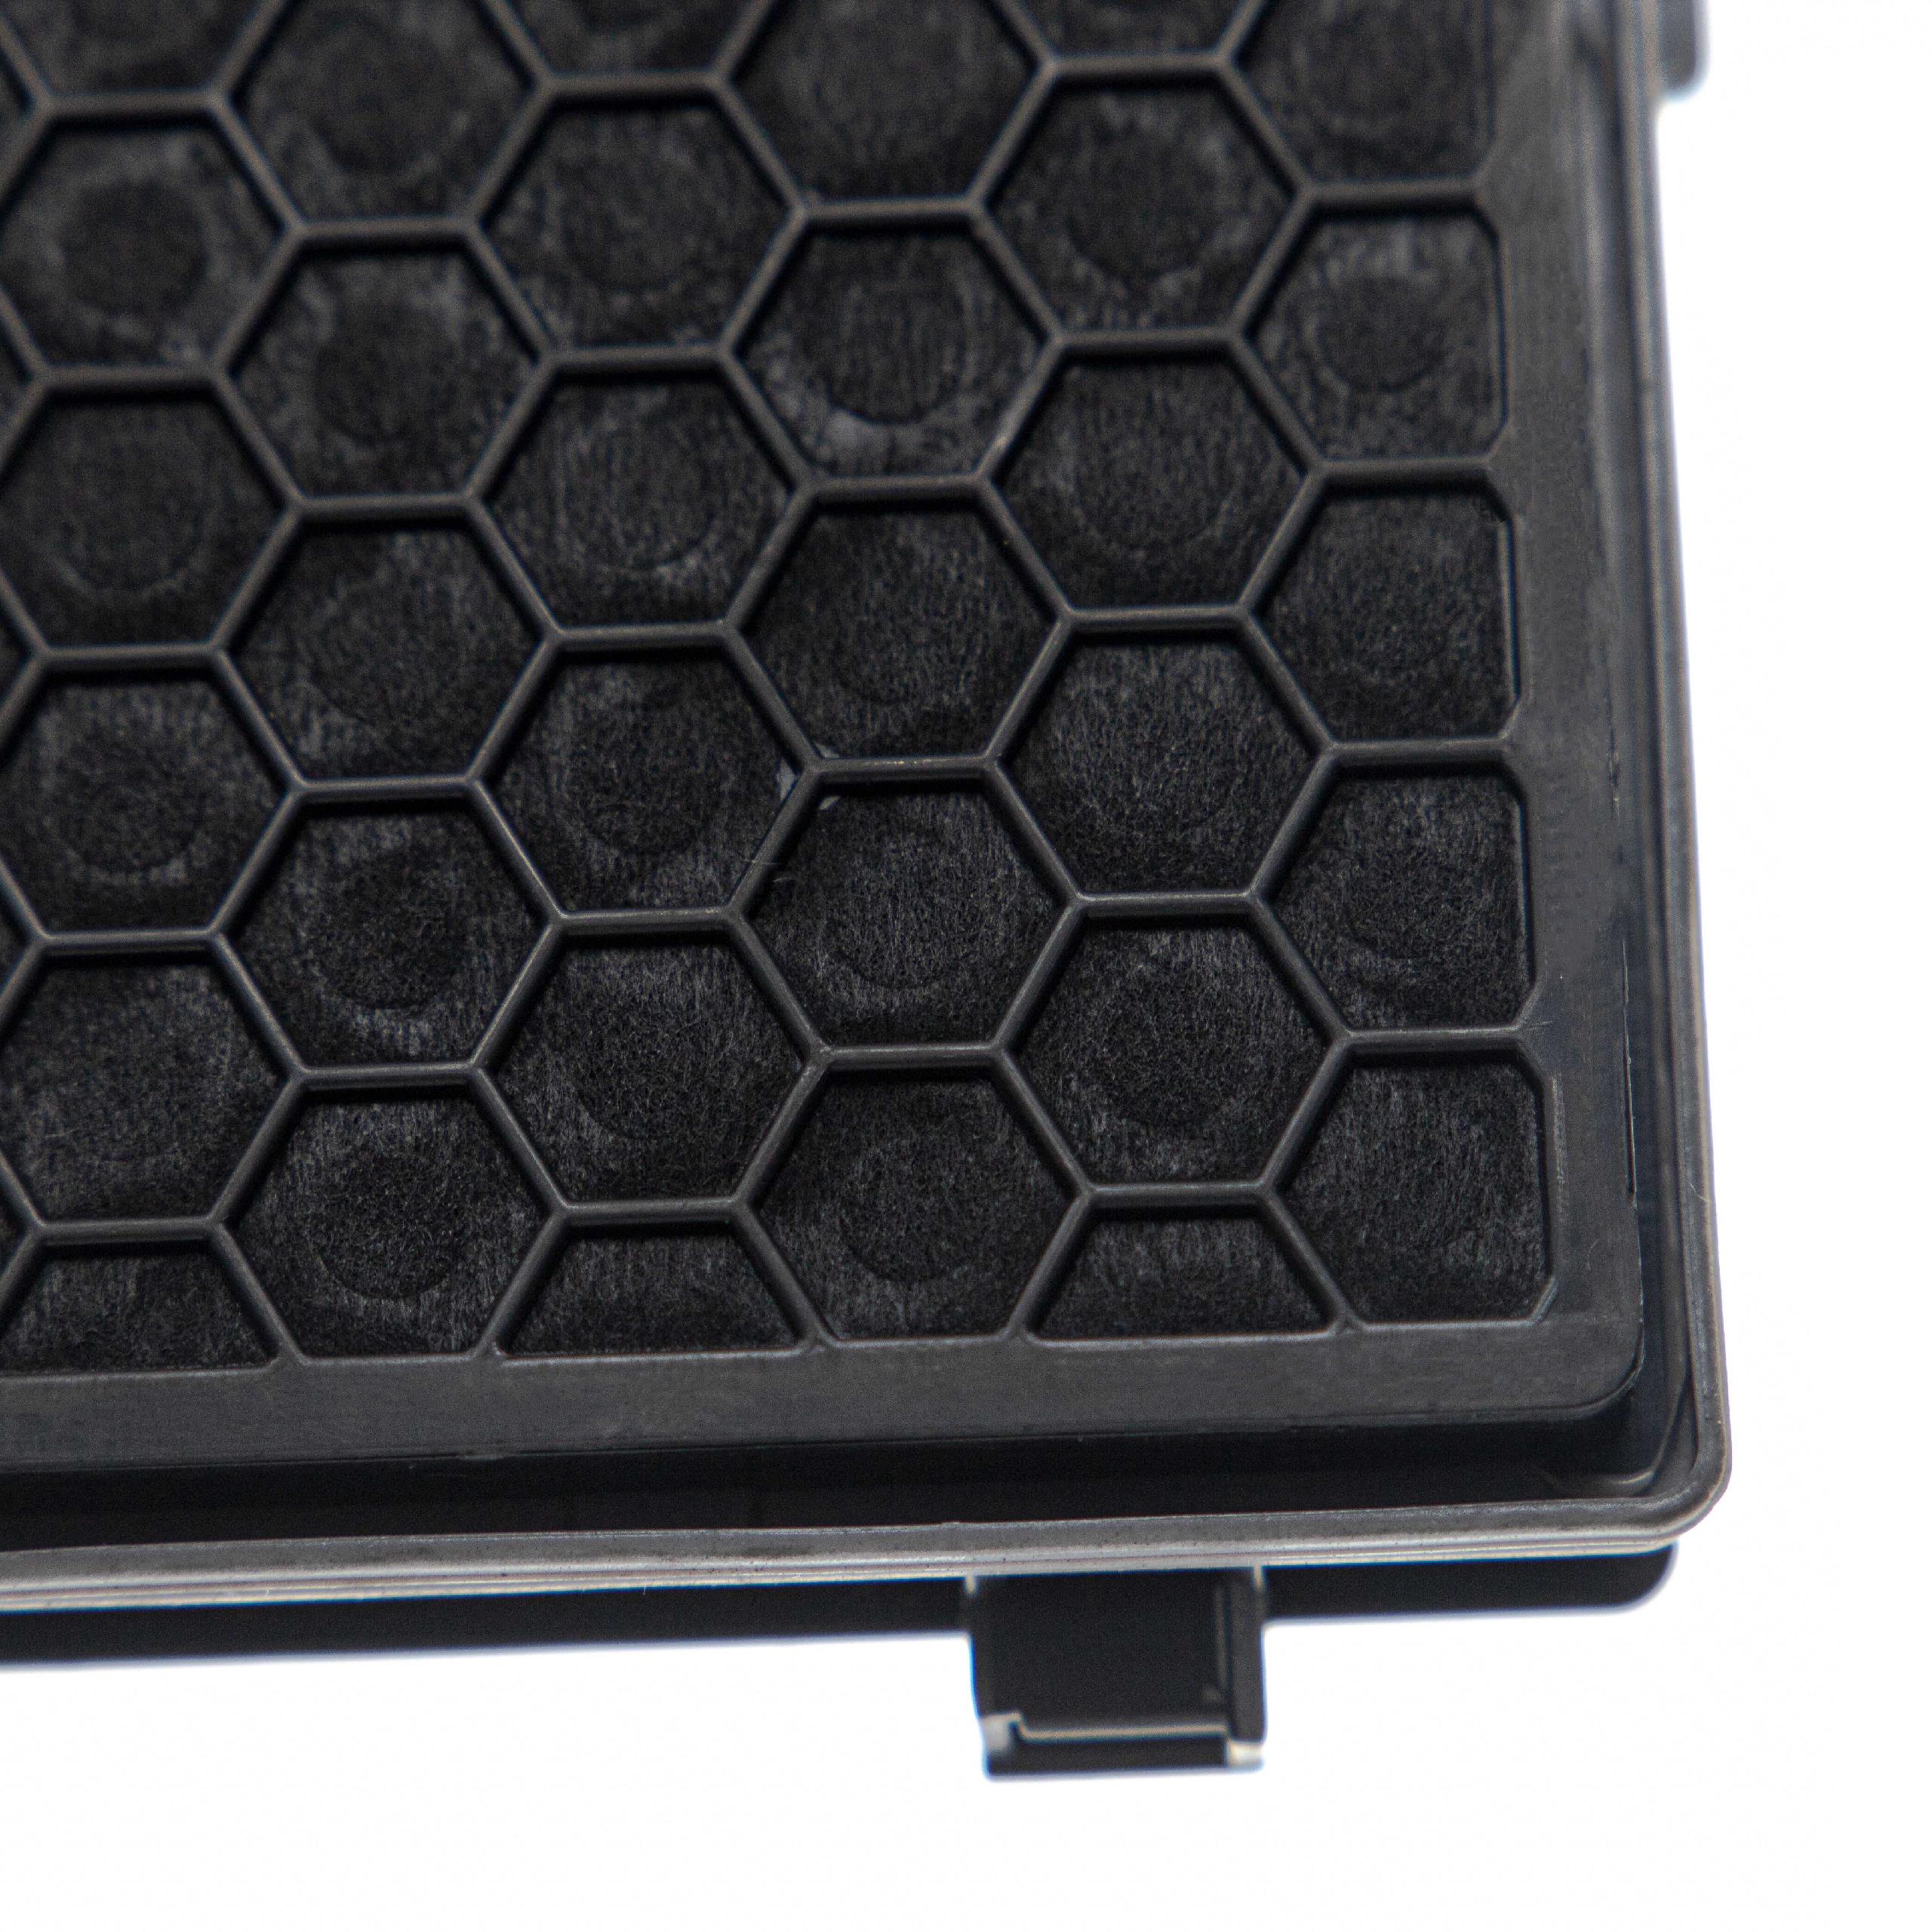 3x Filtro sostituisce Miele 5996880, 5996881 per aspirapolvere - filtro HEPA/ai carboni attivi, nero / bianco